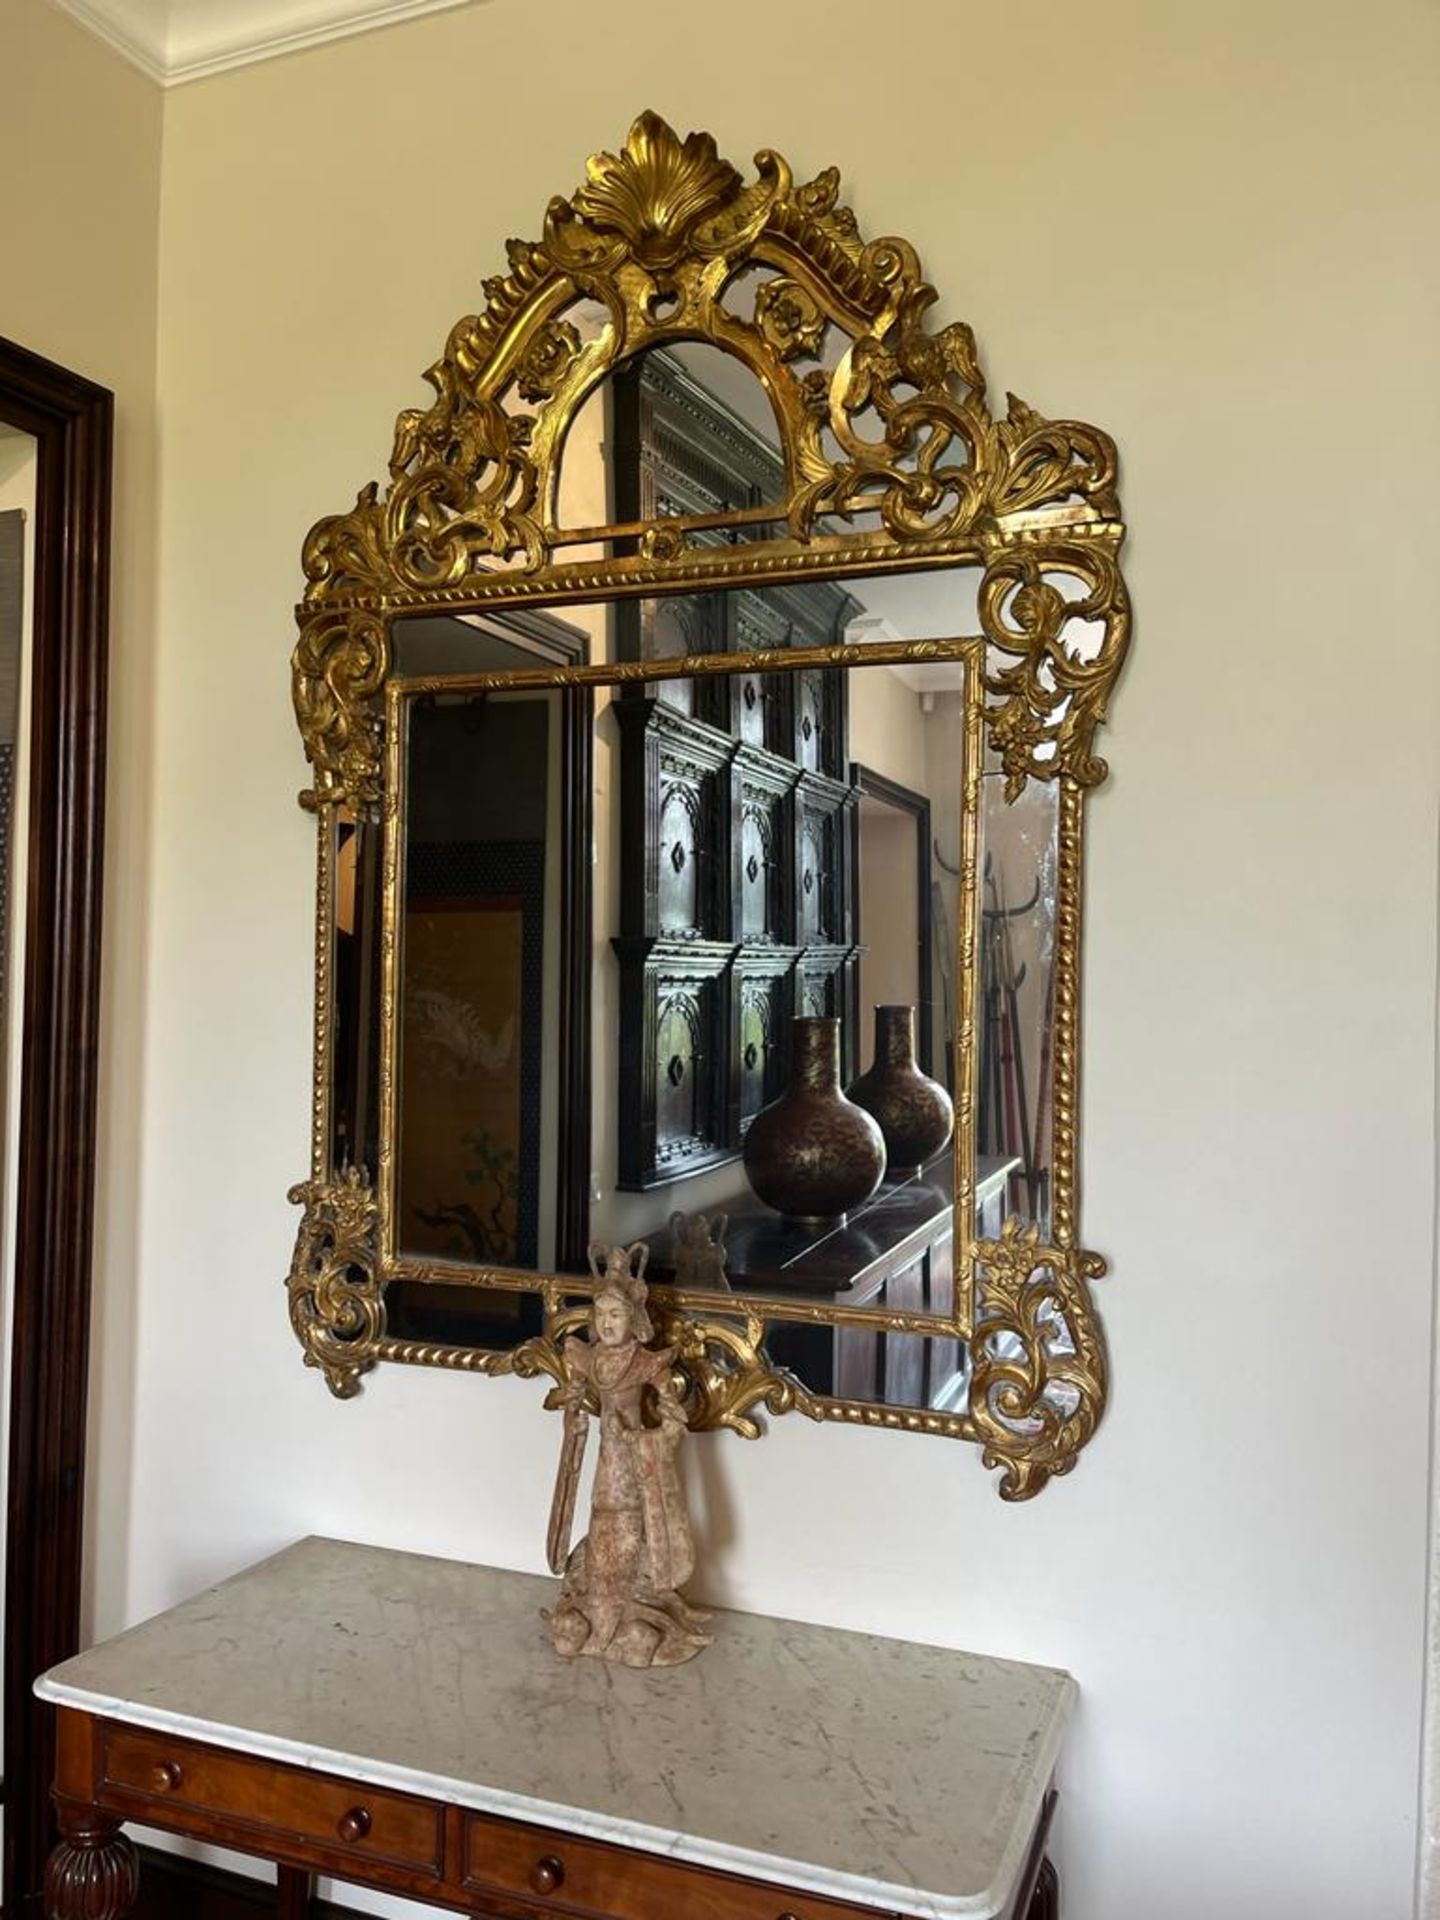 Grand miroir en bois doré à parcloses et fronton Décor d'aigles, de rinceaux feuillagés et fleuris